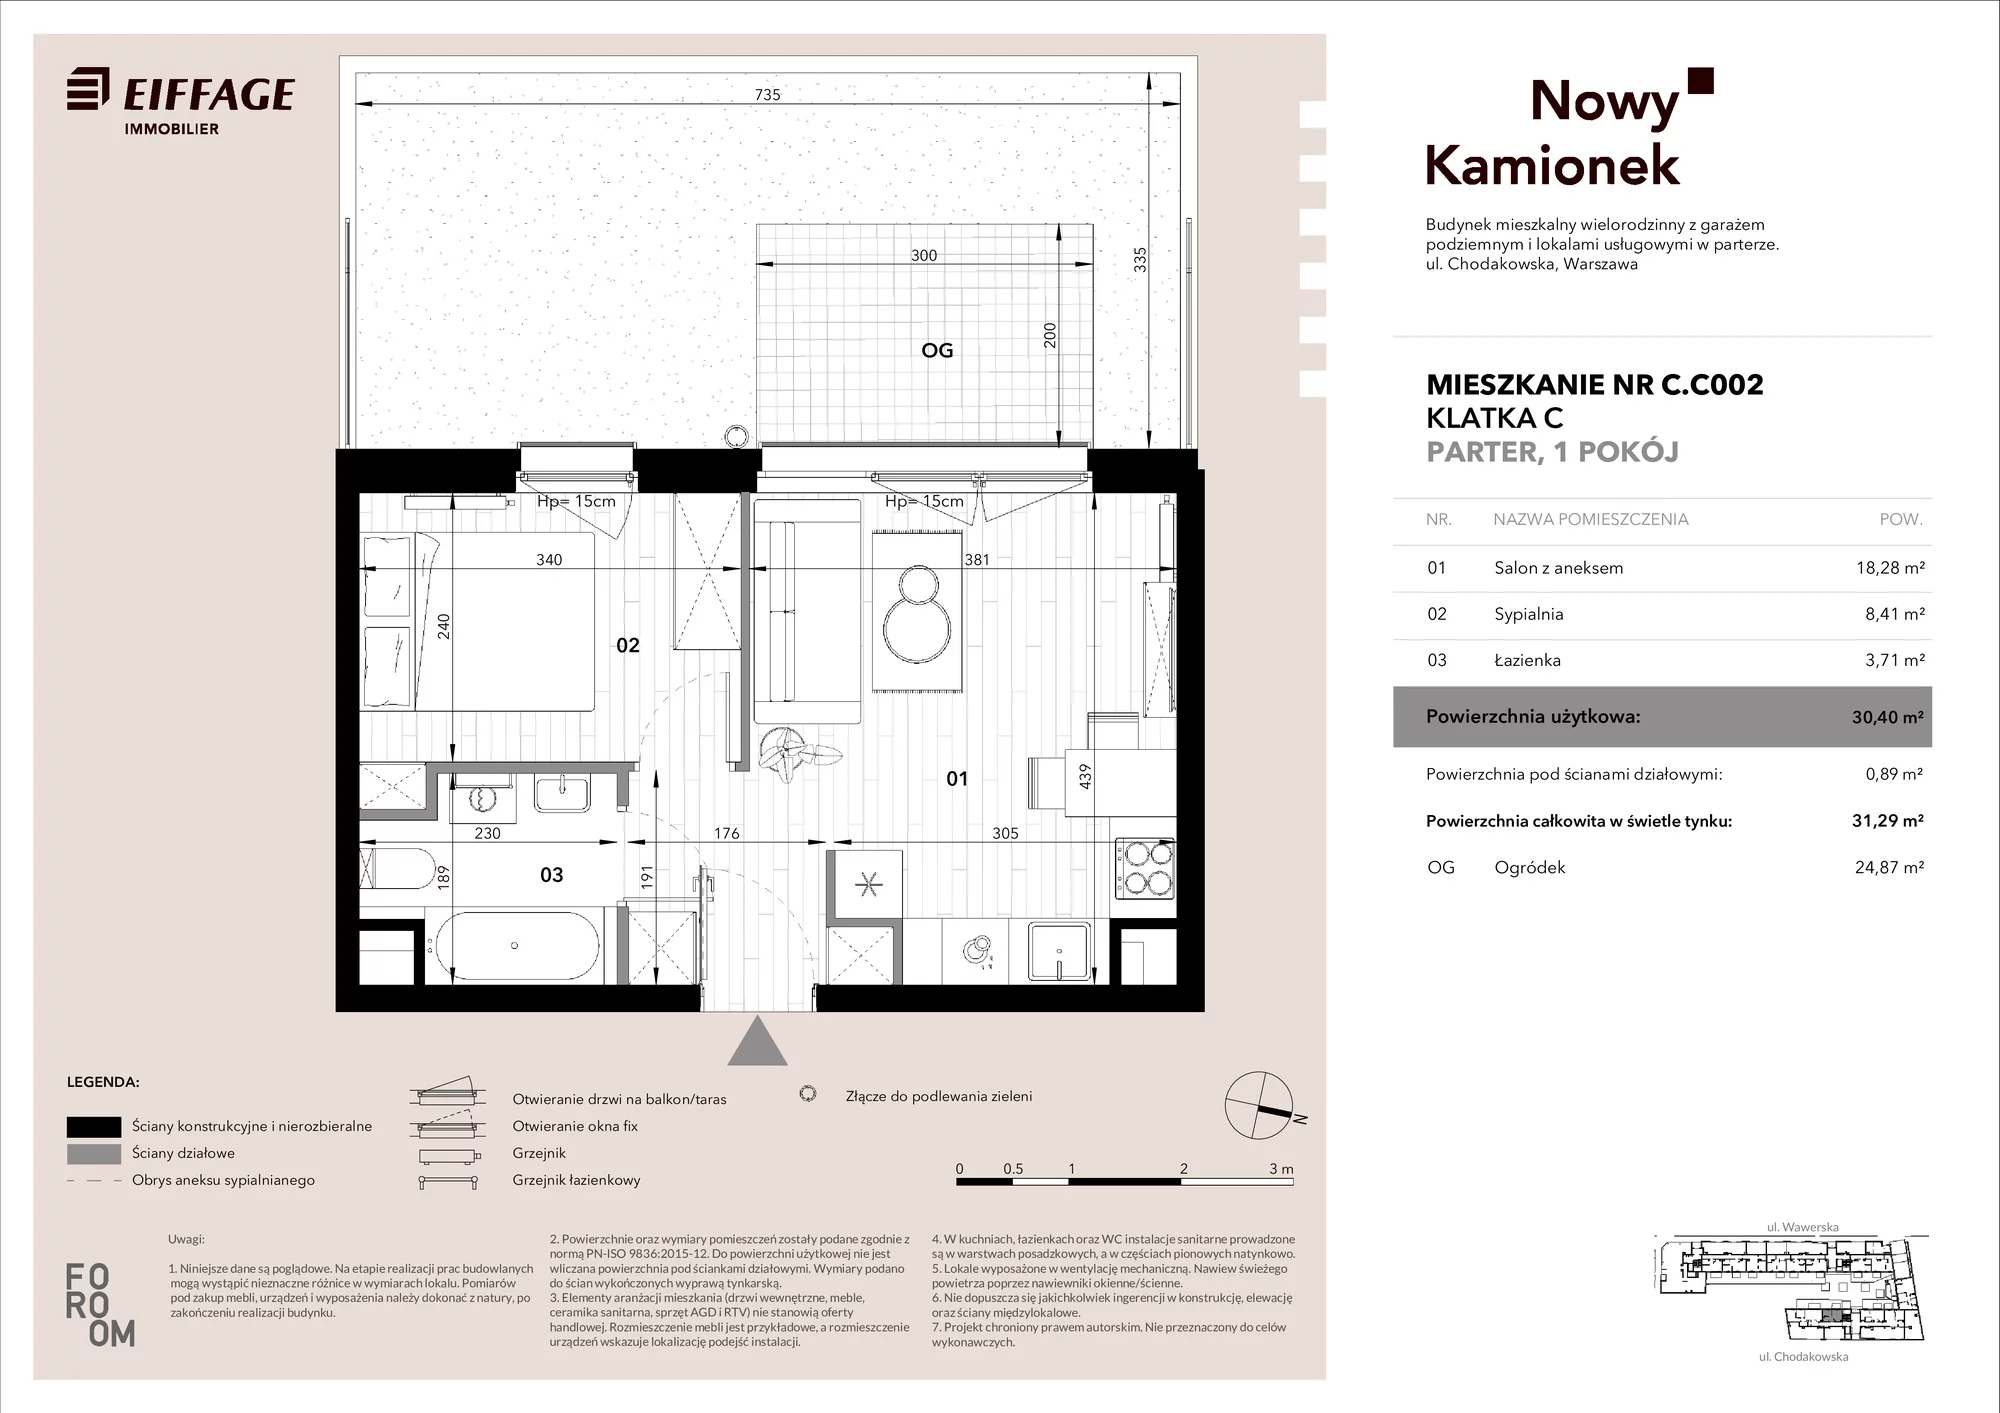 Mieszkanie 30,40 m², parter, oferta nr C.C002, Nowy Kamionek, Warszawa, Praga Południe, Kamionek, ul. Chodakowska